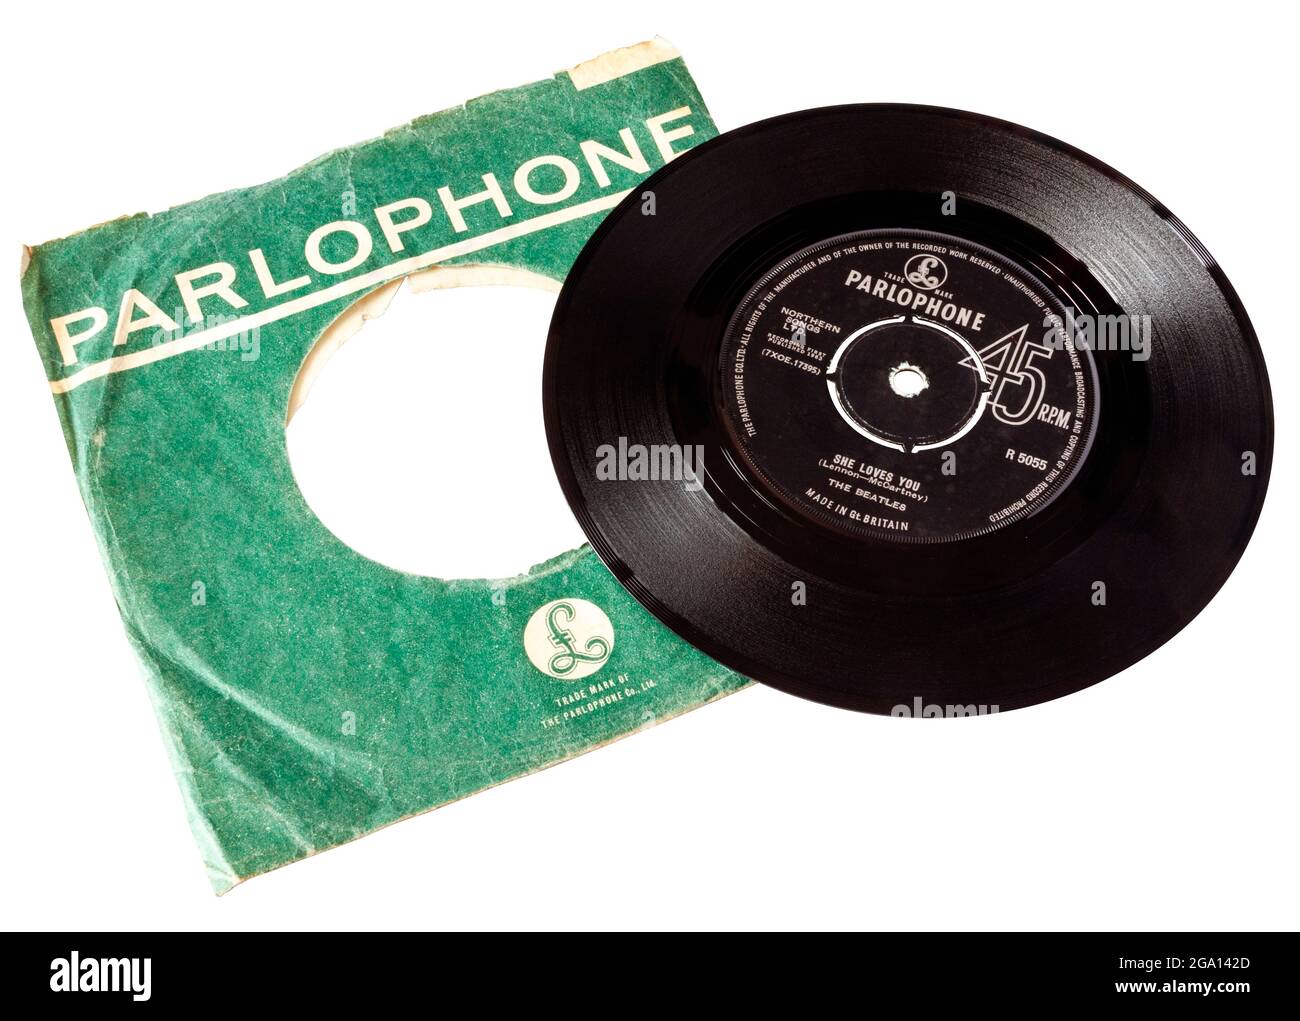 Un disco in vinile singolo da 7' 45rpm di 'She Loves You' dei Beatles con custodia originale Parlophone, isolata su sfondo bianco, con tracciato di ritaglio Foto Stock